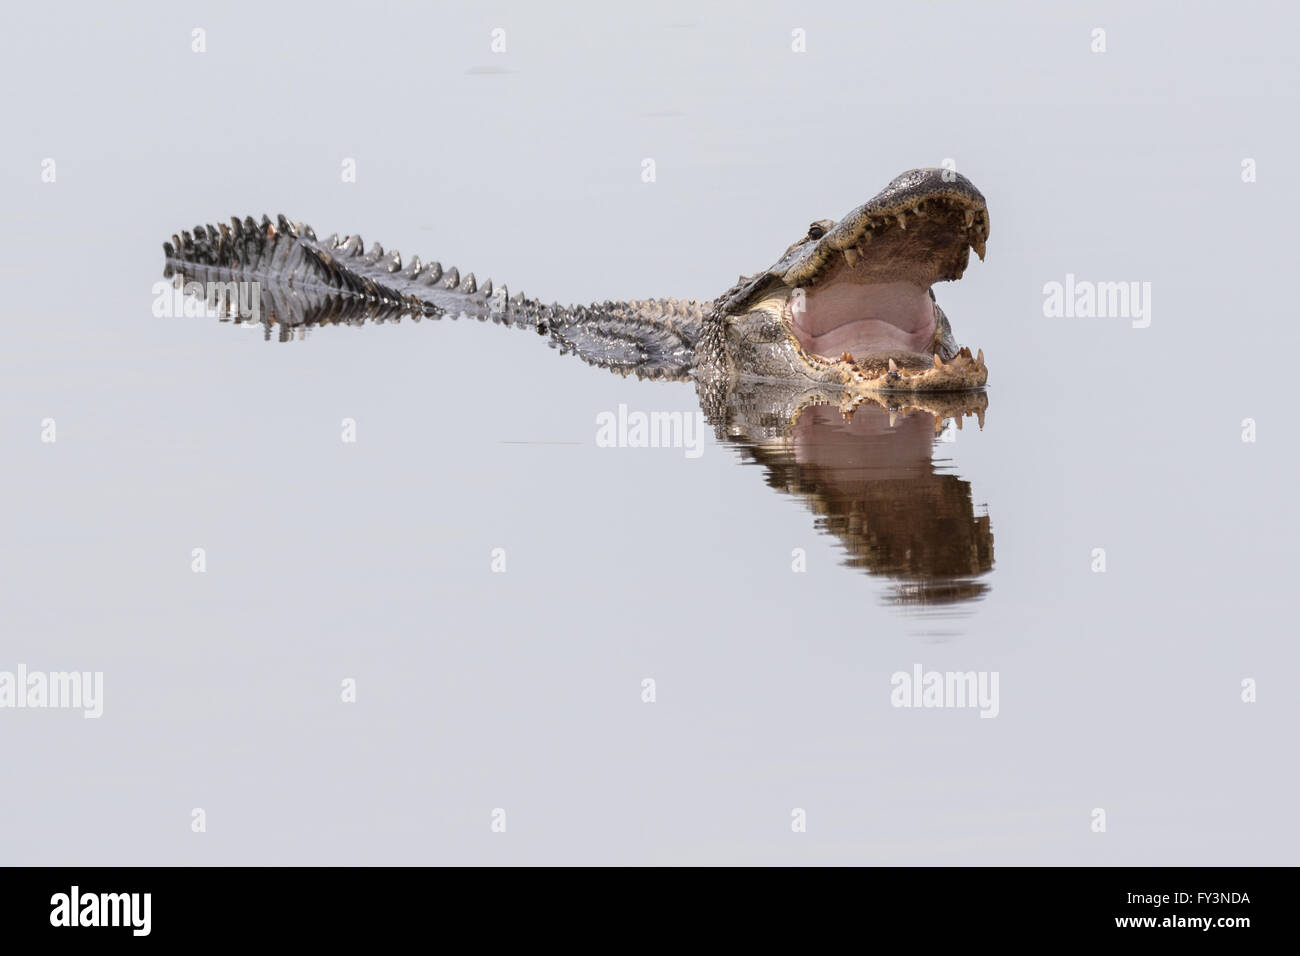 Ein amerikanischer Alligator spiegelt sich in ruhigen Gewässern, wie es Maul zum 20. April 2016 im grünen Teich, Südcarolina Donnelley Wildlife Management Area Abkühlen öffnet. Die Erhaltung ist Teil des größeren ACE Becken Natur Flüchtlings, eine der größten unbebauten Mündungen entlang der atlantischen Küste der Vereinigten Staaten. Stockfoto